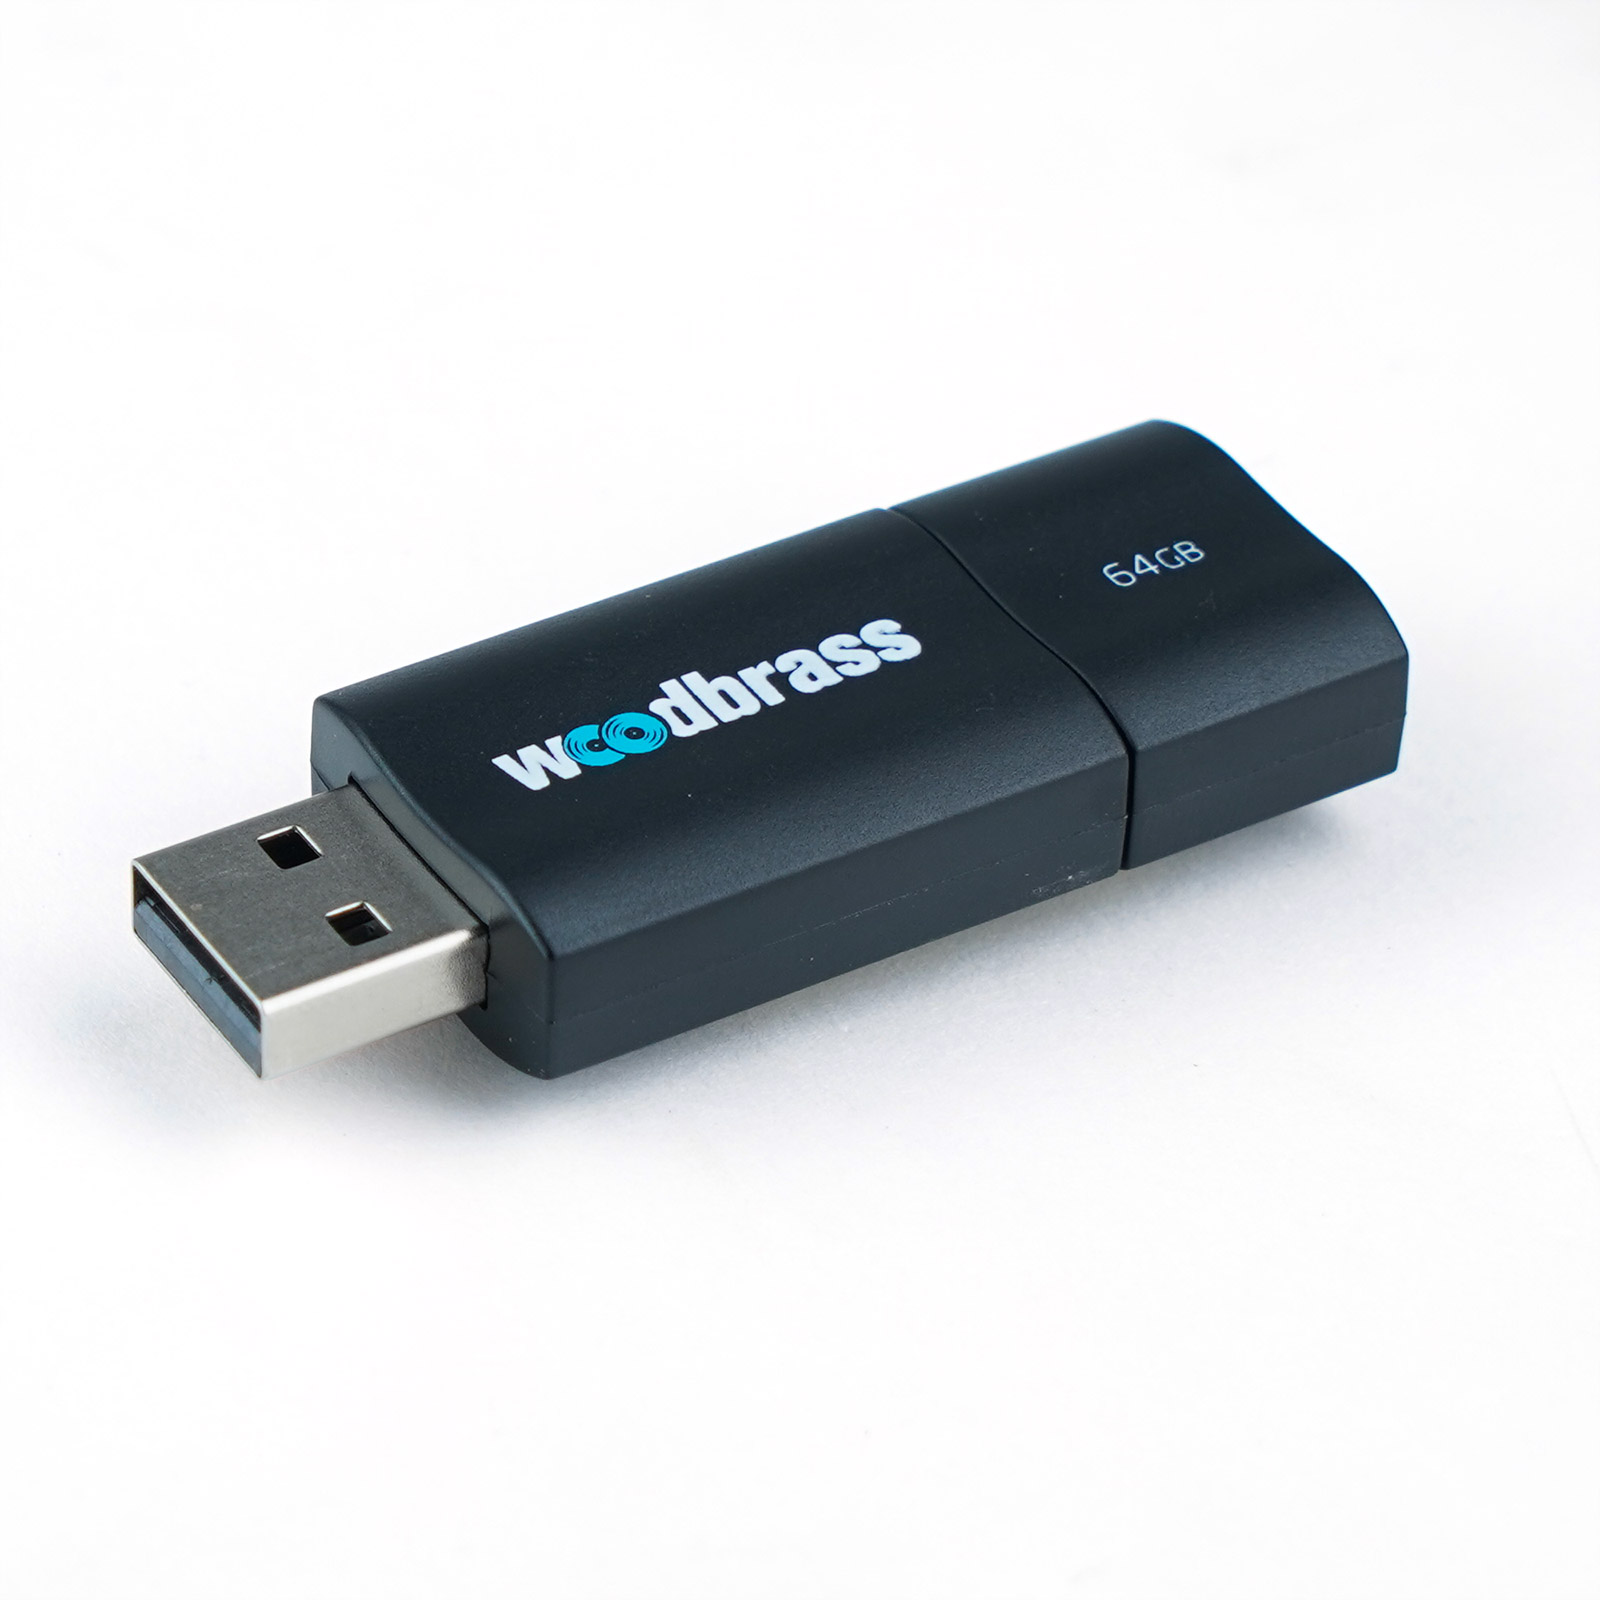 WOODBRASS USB KEY 64GB